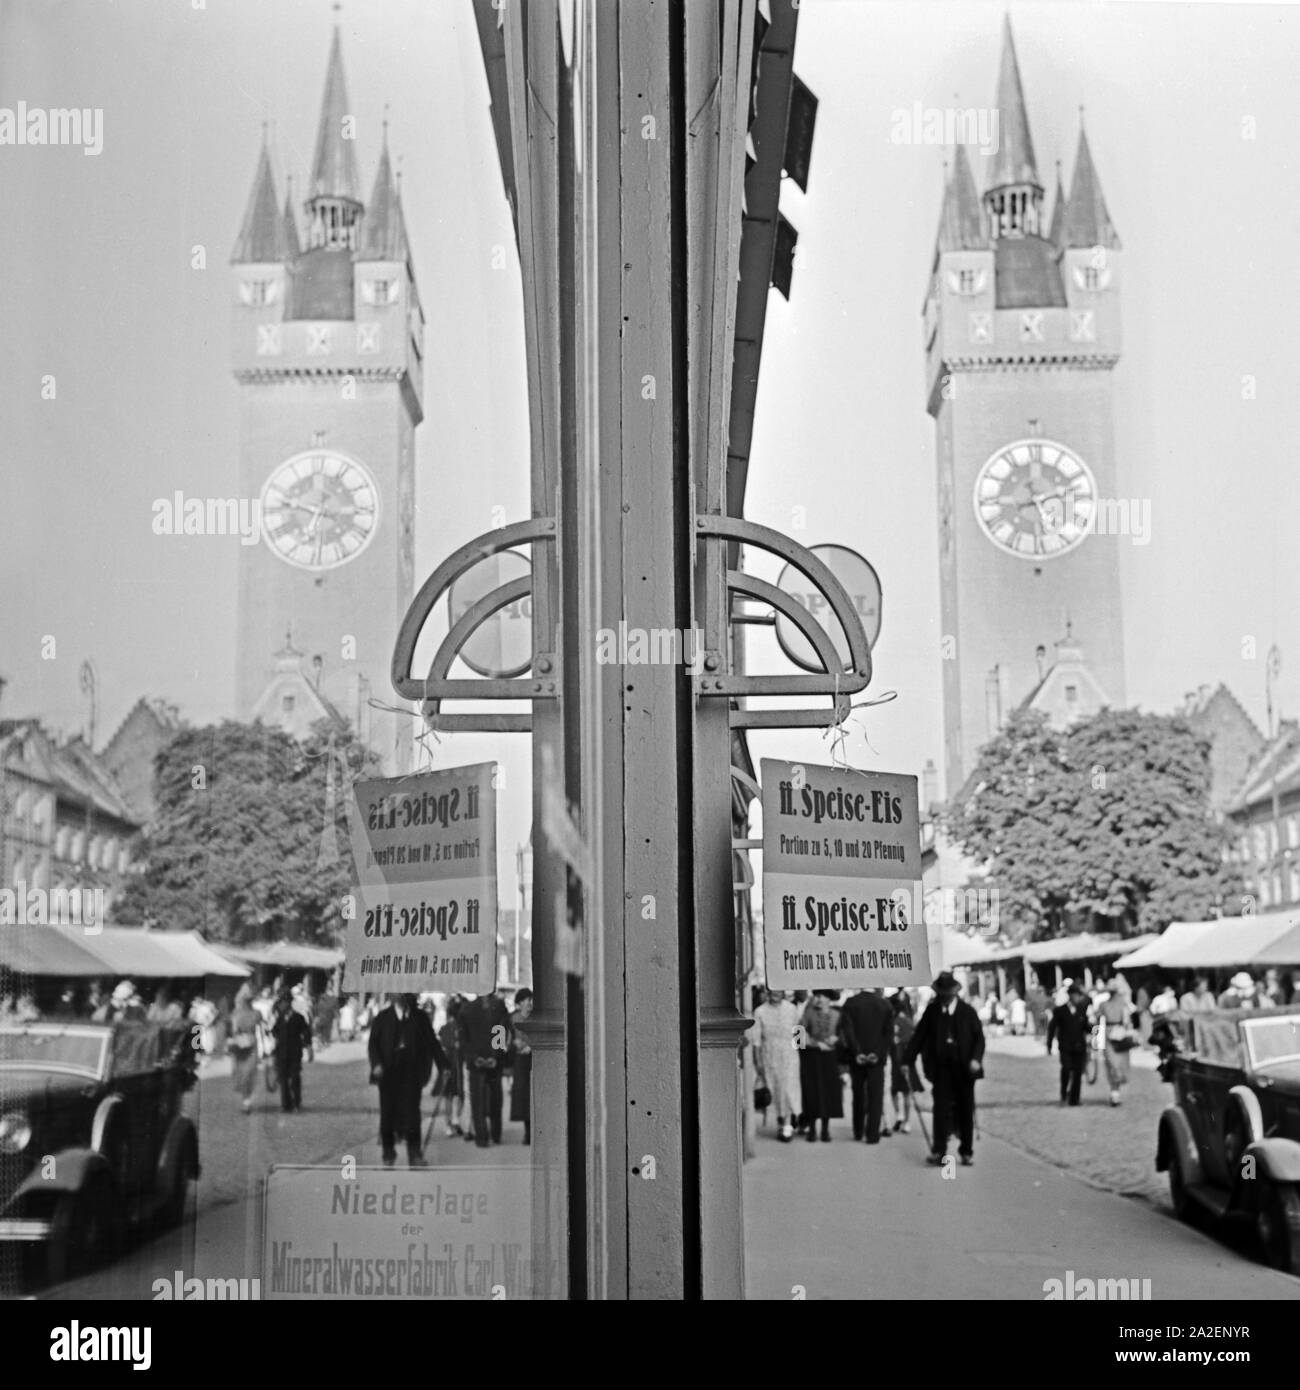 Der Stadturm von Straubing spiegelt sich in der Schaufensterscheibe eines Eisladens, Deutschland 1930er Jahre. Straubing city tower riflettendo in una vetrina di un'uscita per gelato, Germania 1930s. Foto Stock